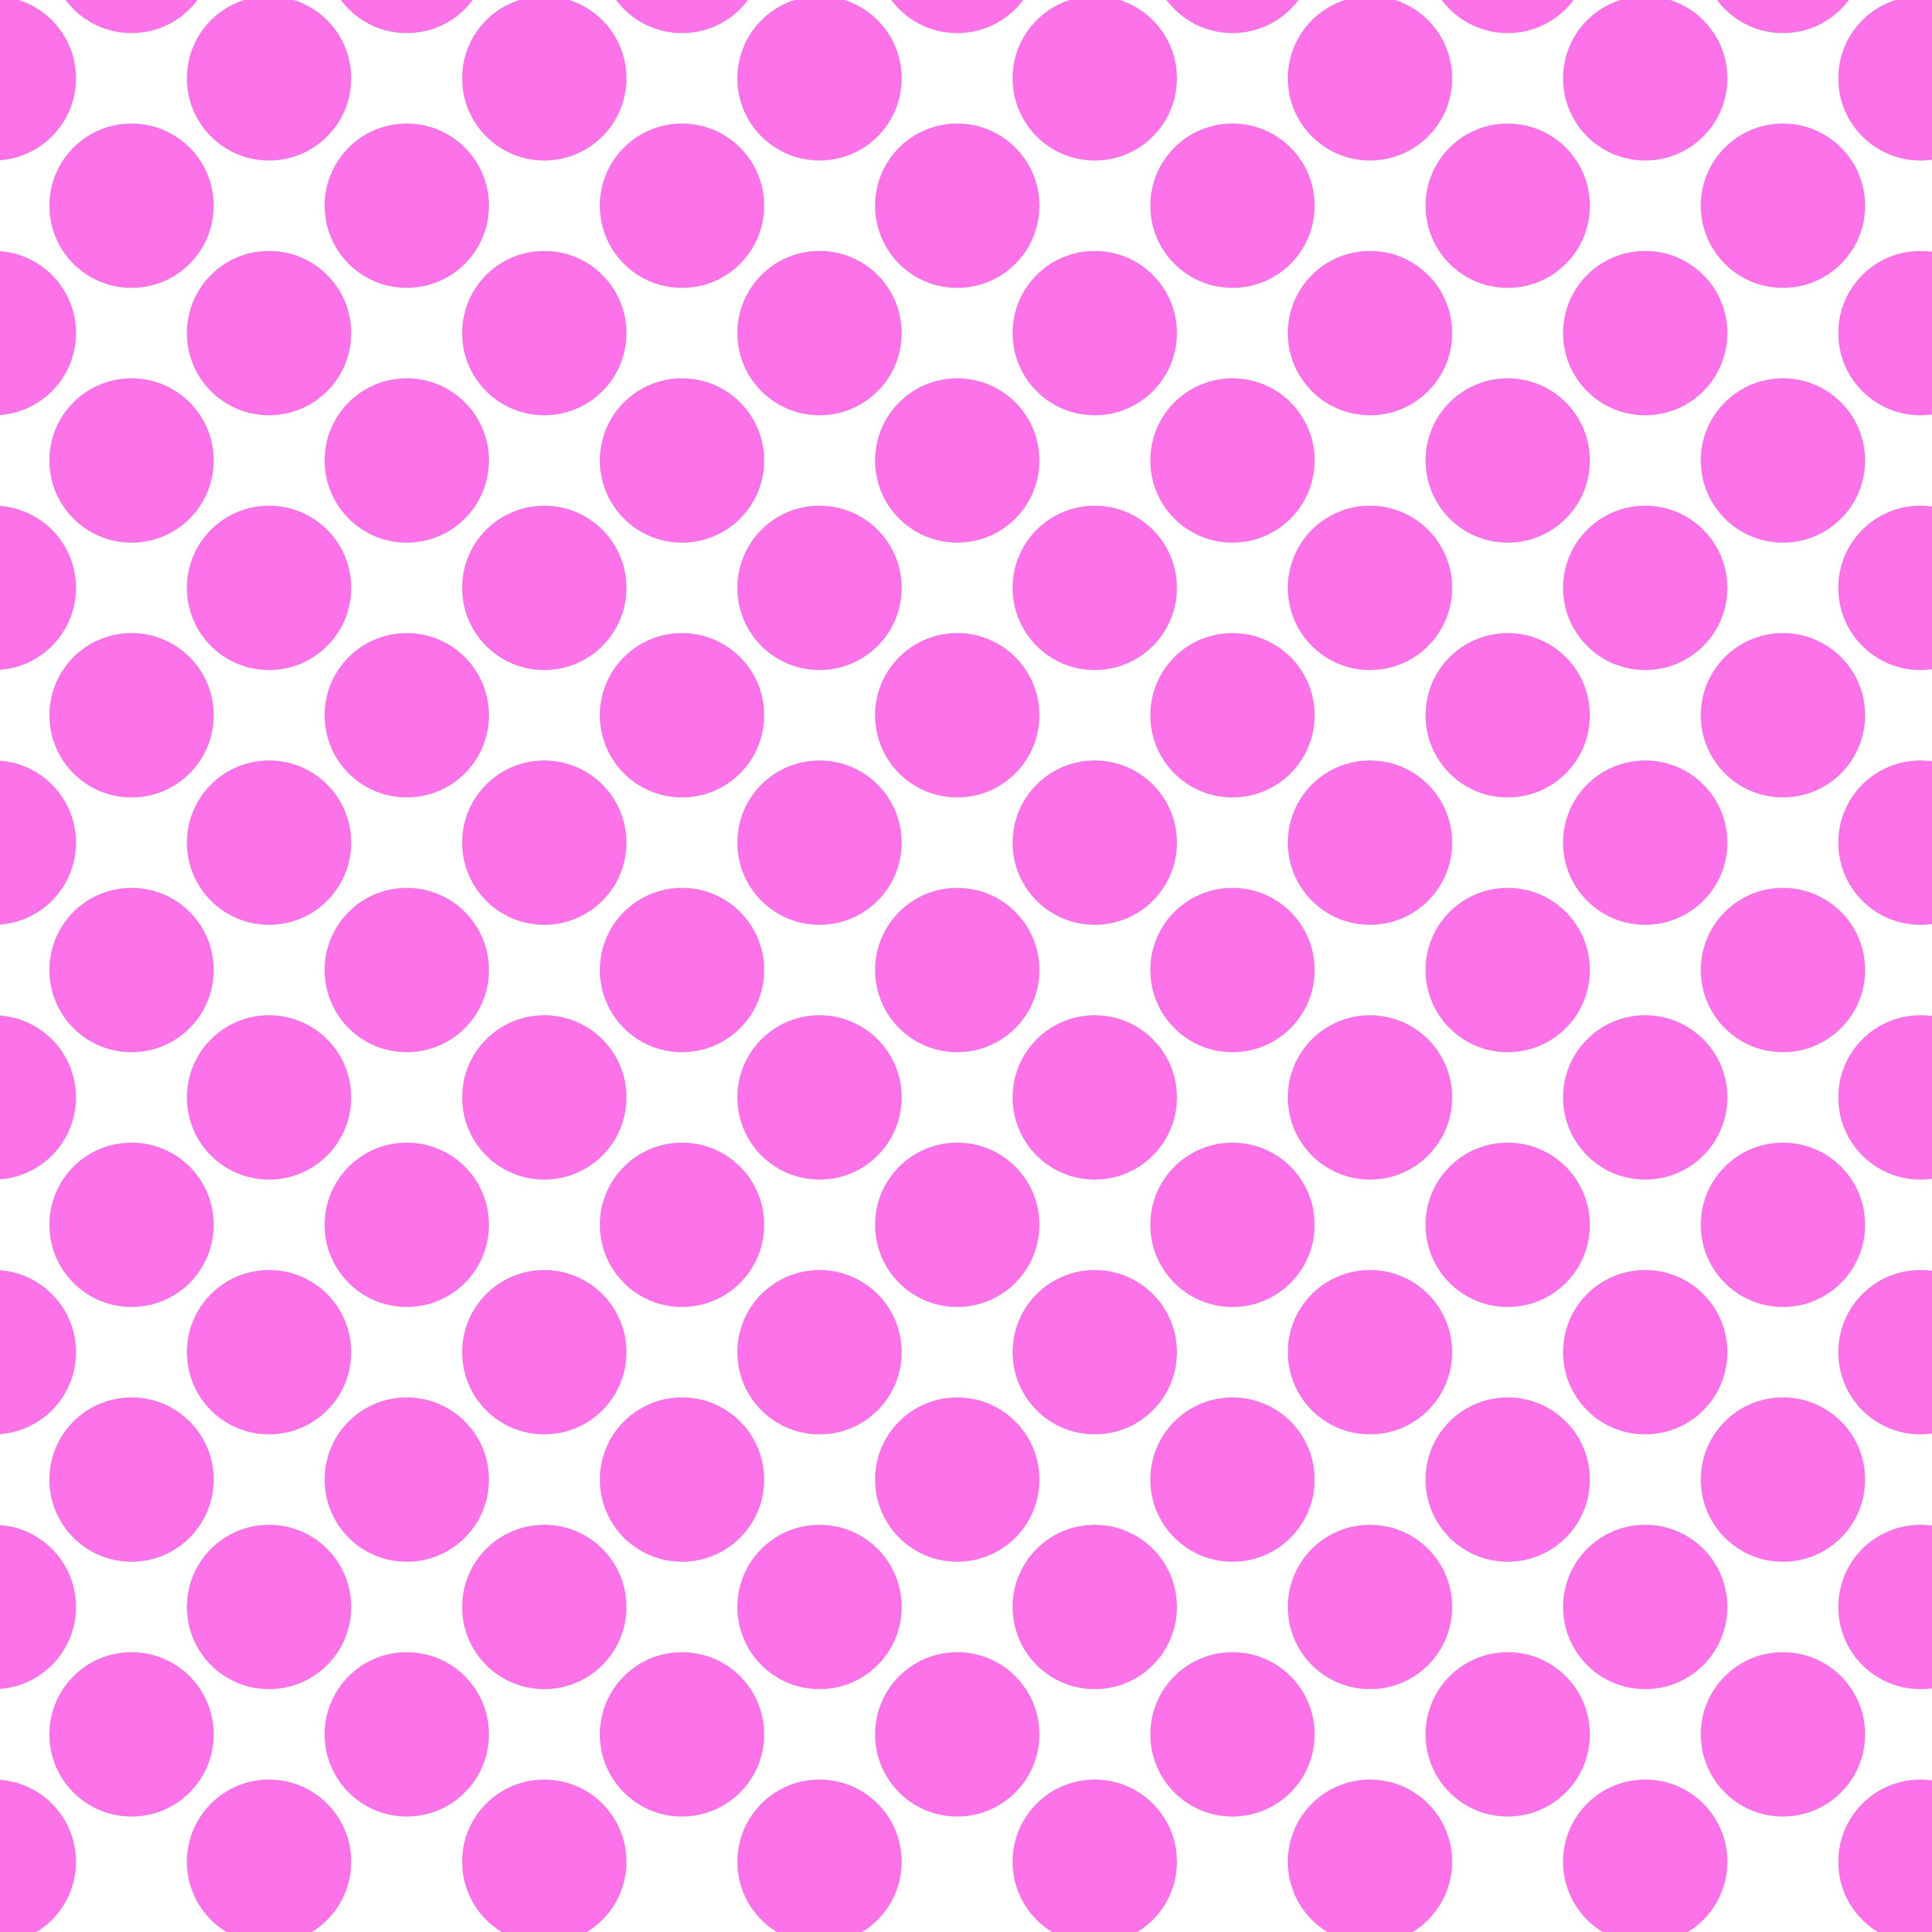 Polka Dot 1 cm Beyaz - Lavanta Gül Rengi Puantiye Dekoratif Baskı Kumaş